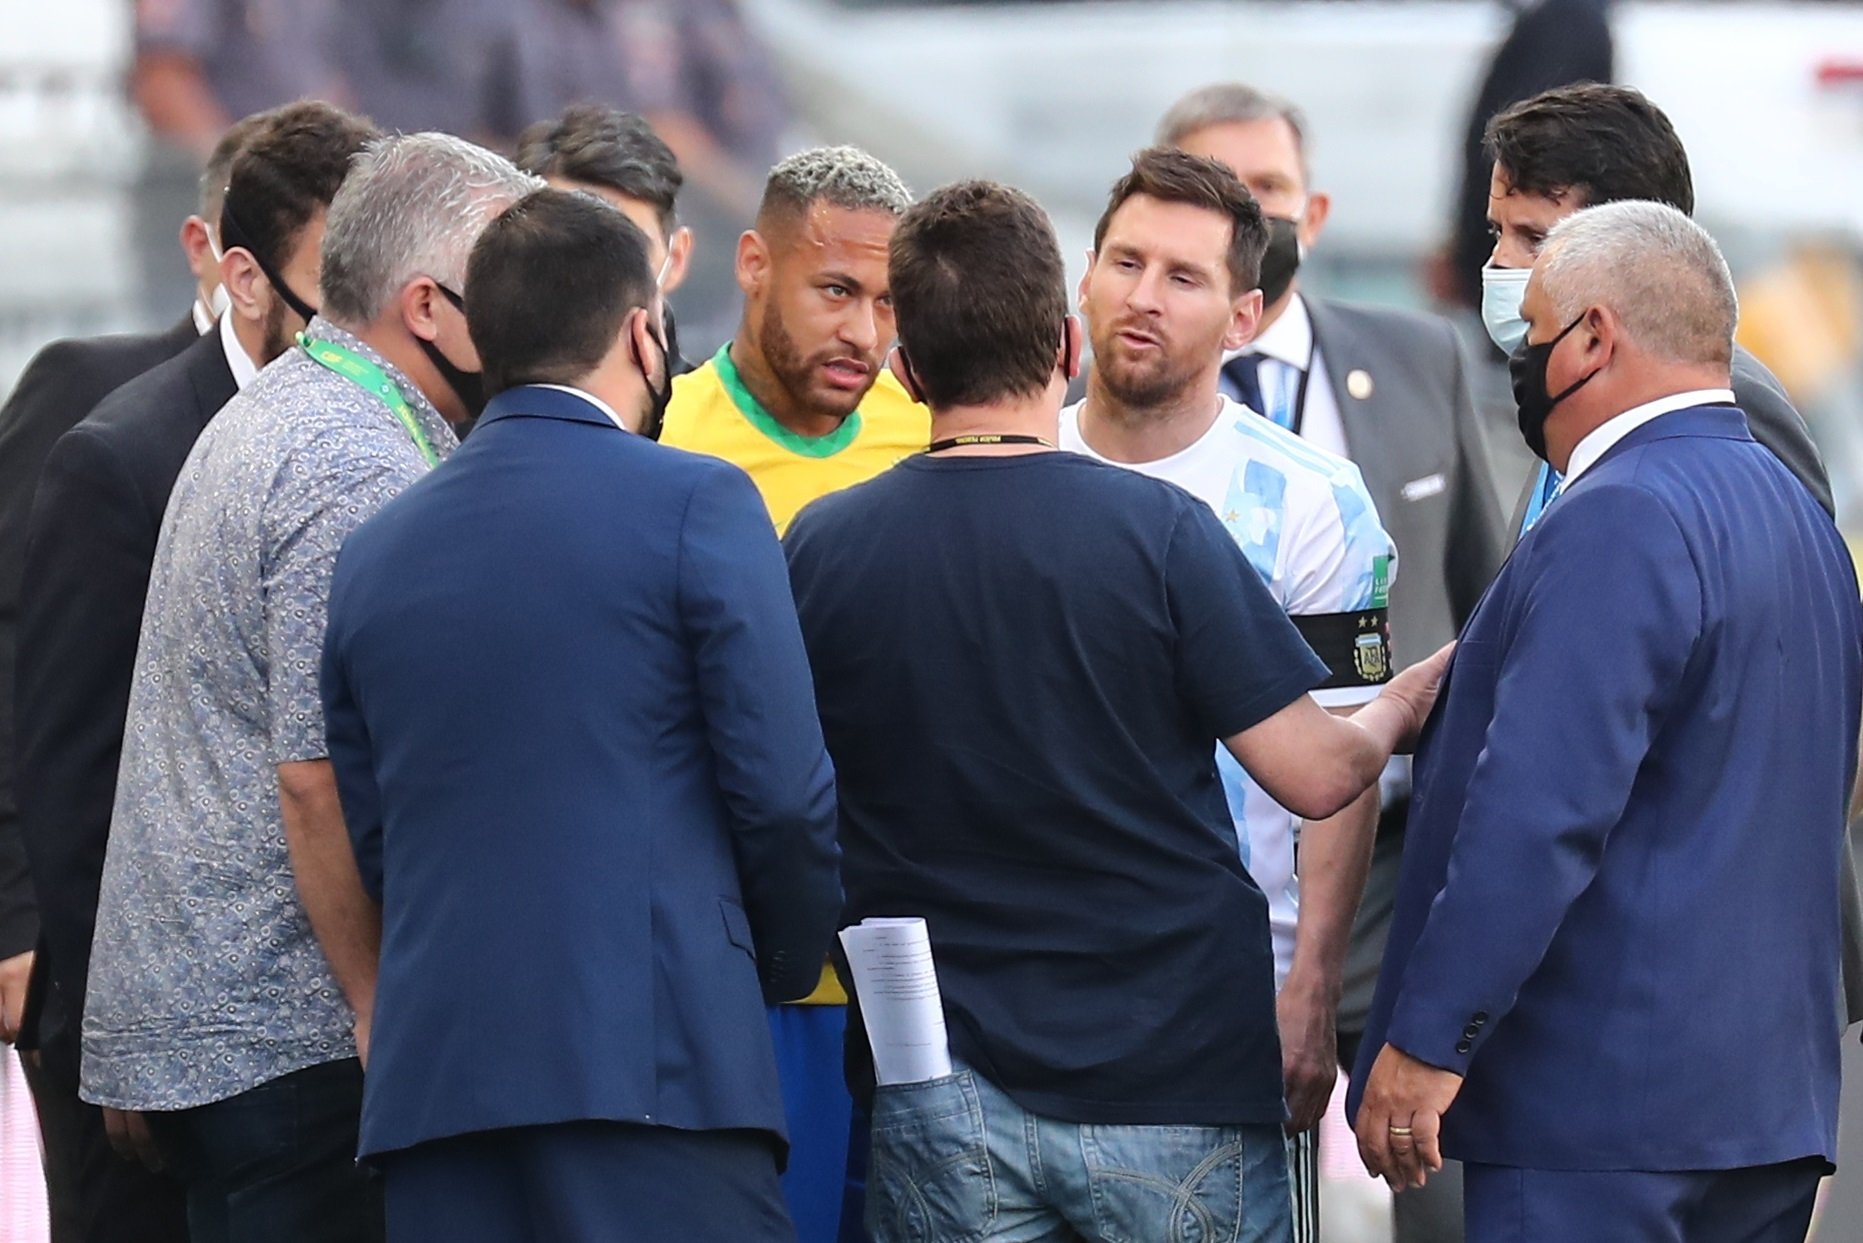 Les imatges de la vergonya: aturen el partit i Messi 'acaba' de fotògraf